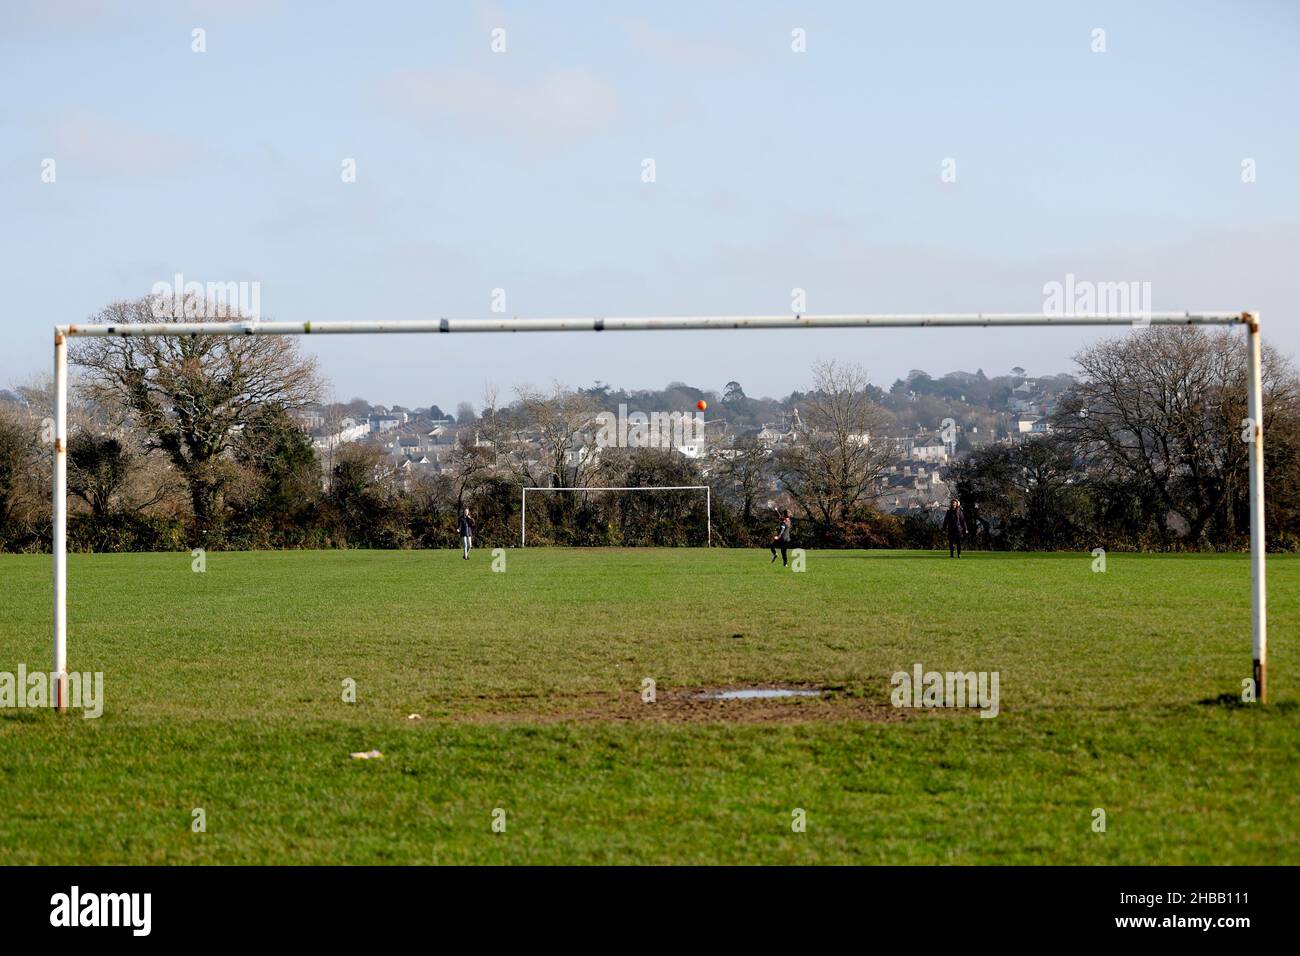 Vor dem Sky Bet League One-Spiel im Home Park, Plymouth, spielen Menschen Fußball außerhalb des Stadions. Bilddatum: Samstag, 18. Dezember 2021. Stockfoto